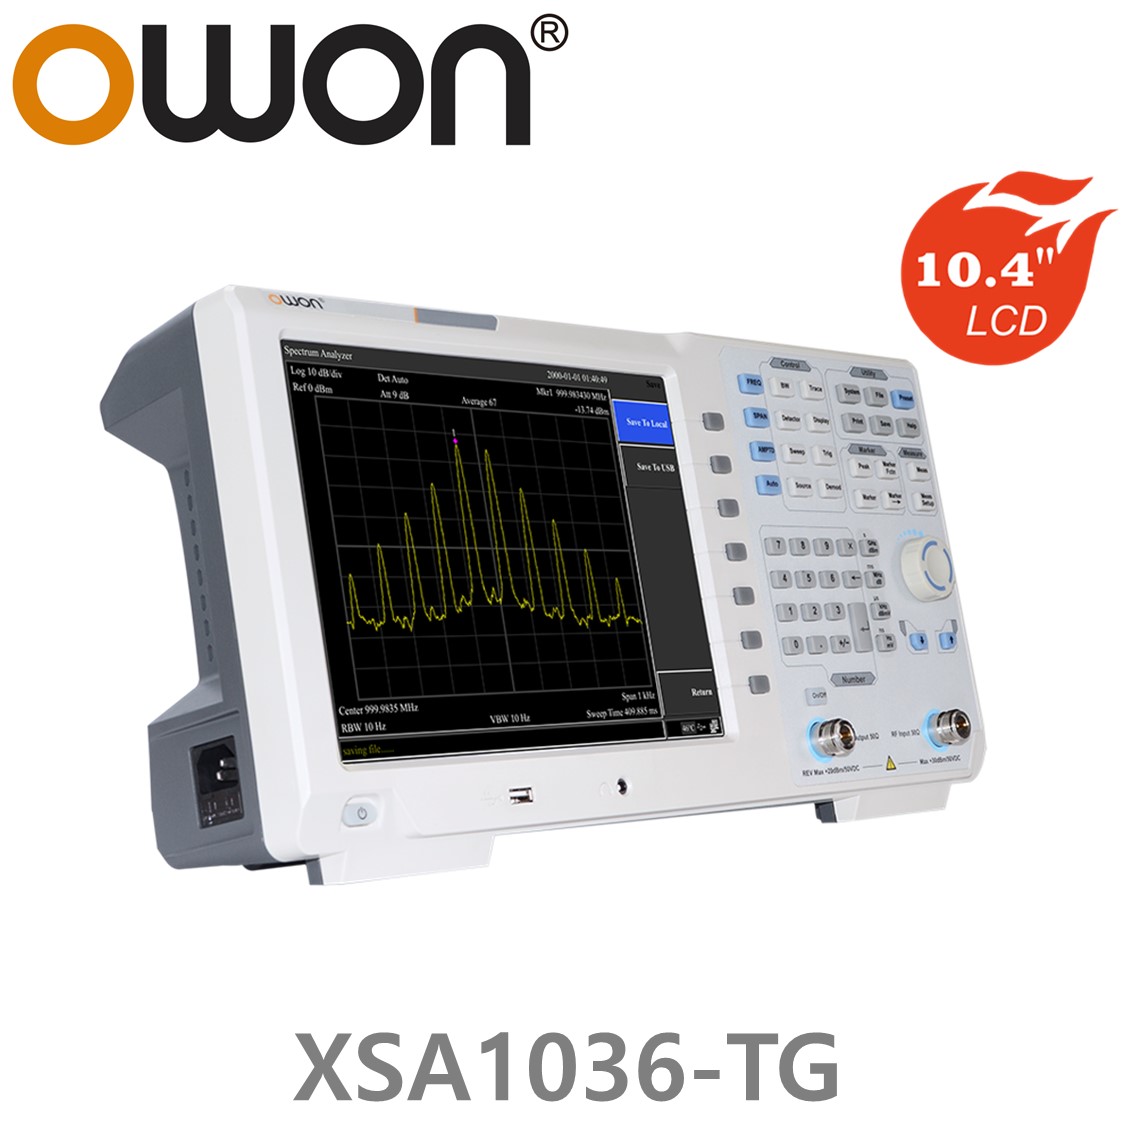 [ OWON ] XSA1036-TG 스펙트럼 아날라이저 9kHz~3.6GHz 트래킹 제너레이터